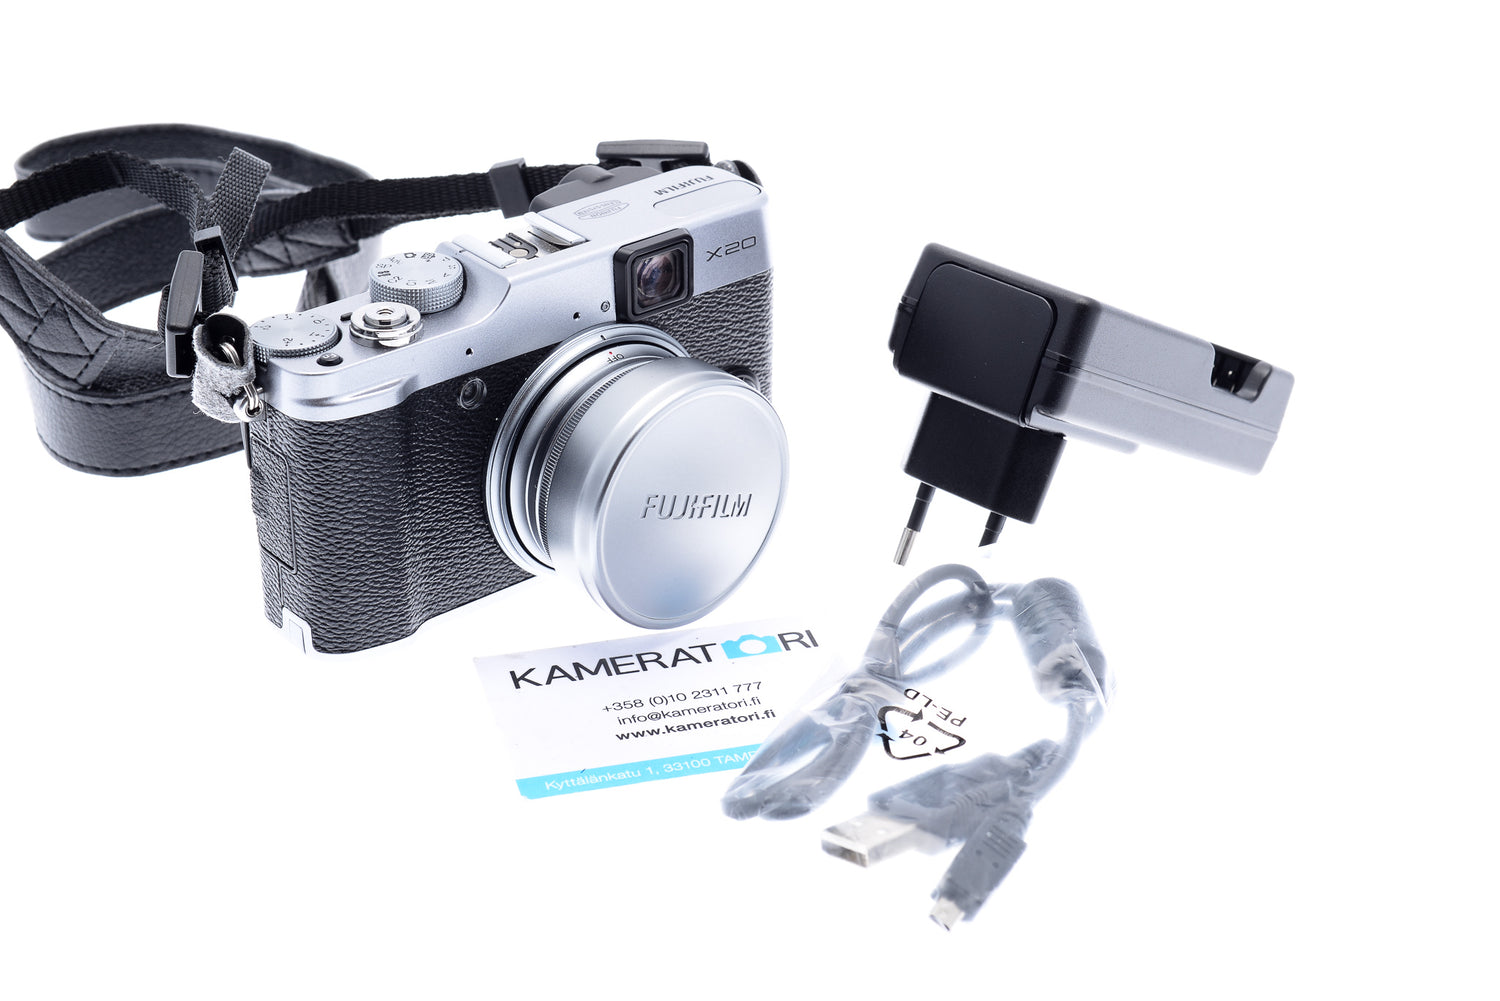 elkaar Niet essentieel Tegen de wil Fujifilm X20 - Camera – Kamerastore